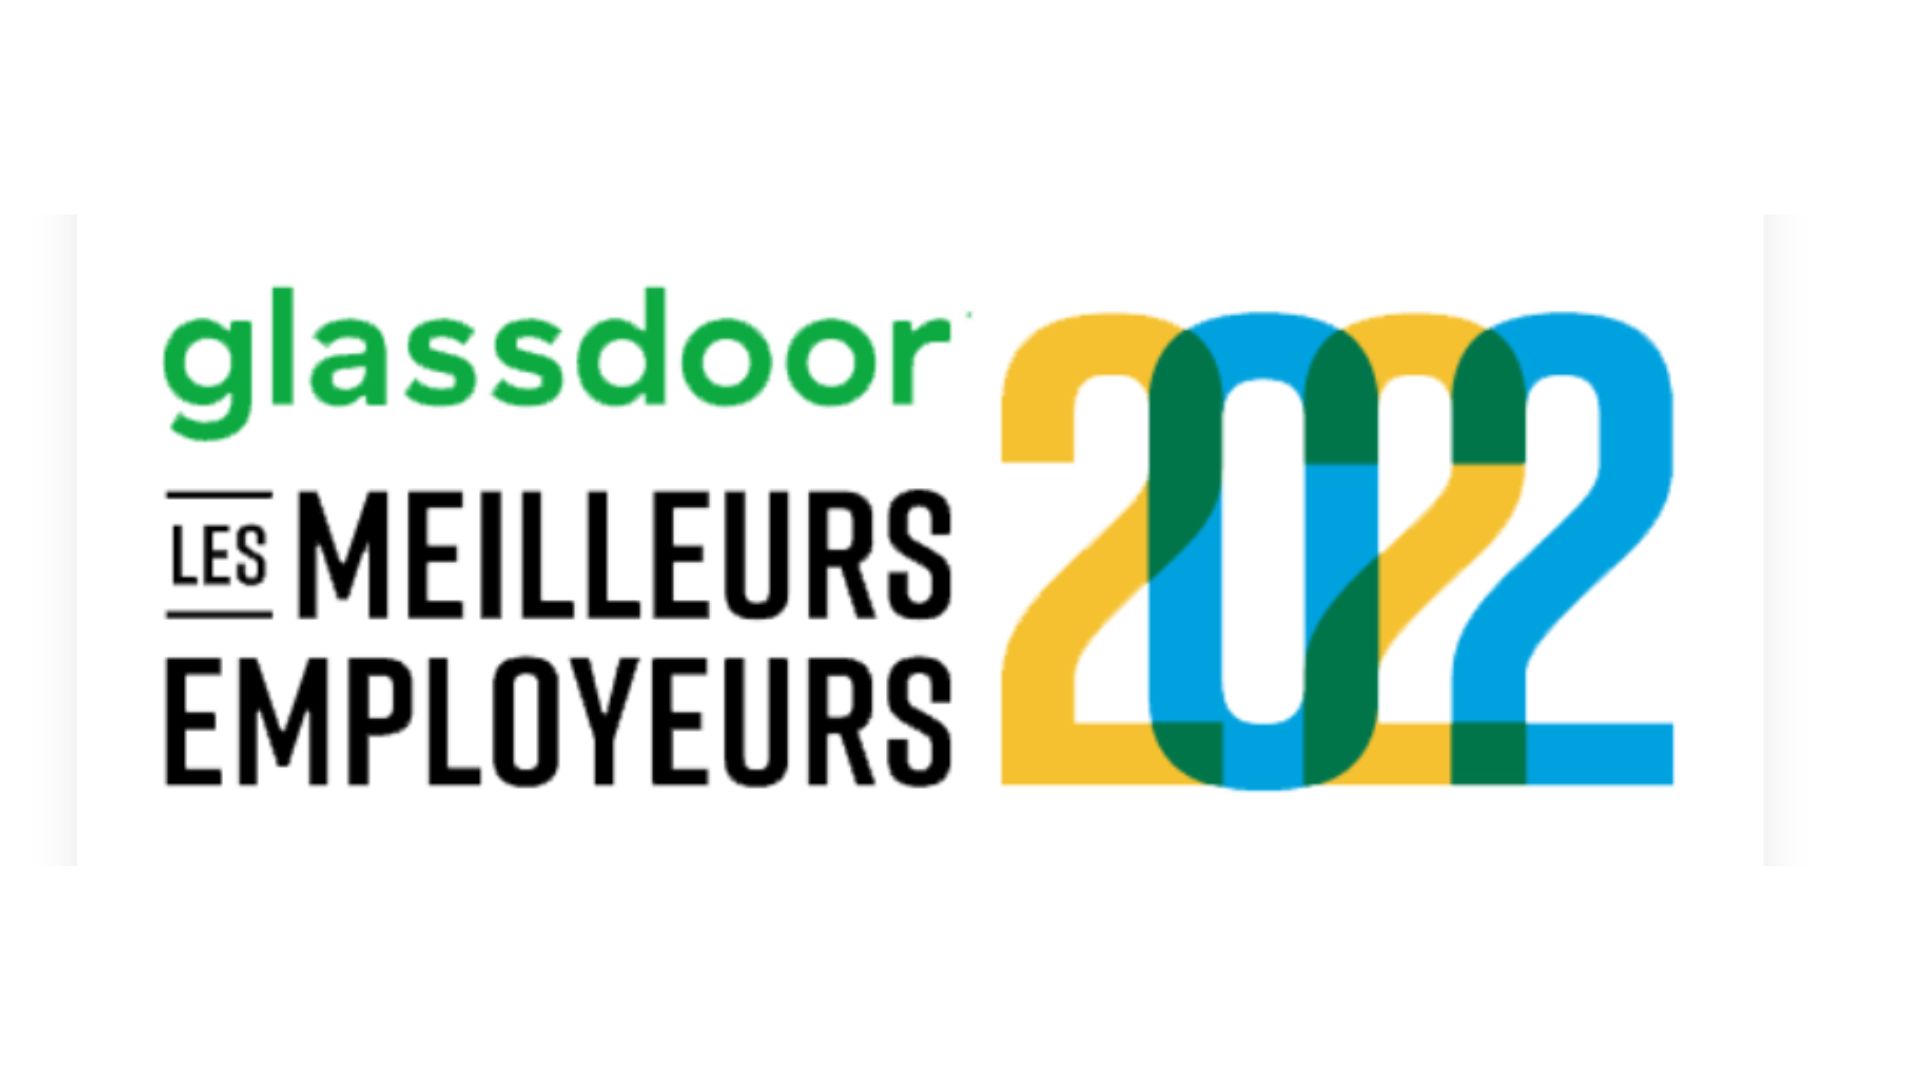 Bpifrance classé sur Glassdoor parmi les Meilleurs Employeurs 2022 !